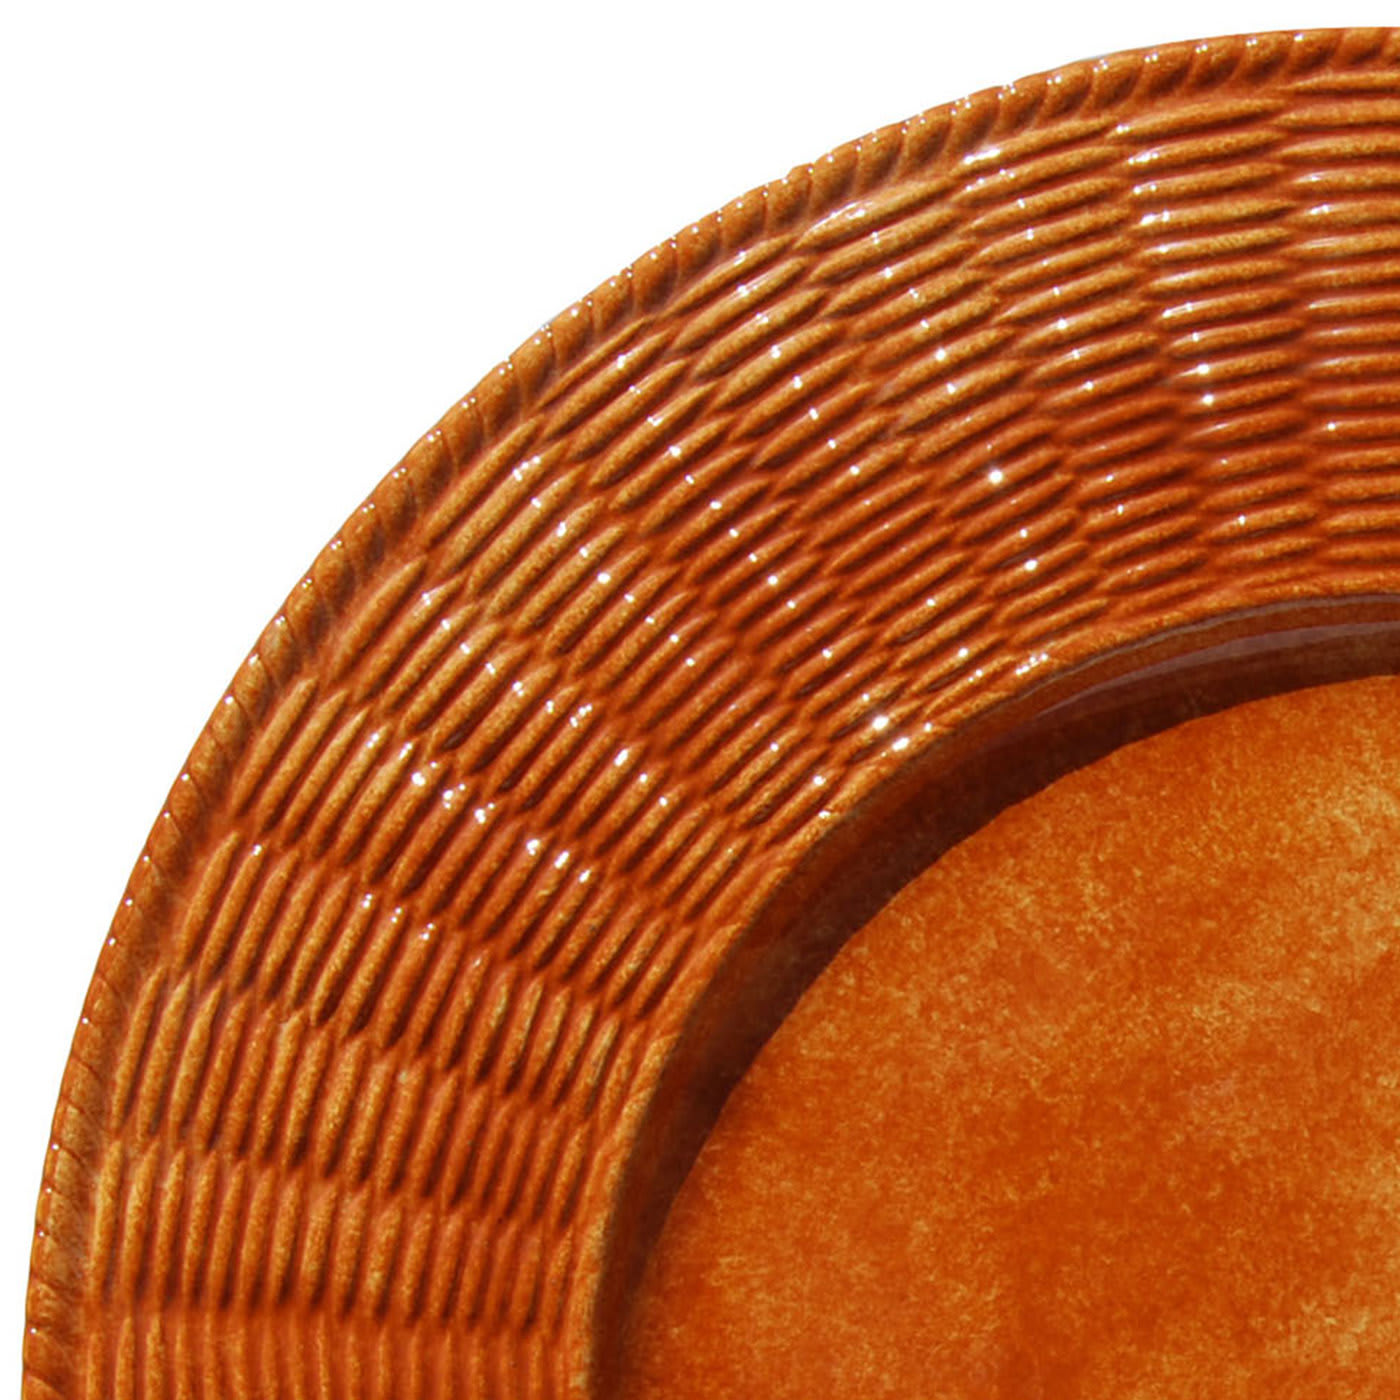 Set of 4 Arancio Wicker Ceramic Plates - Este Ceramiche